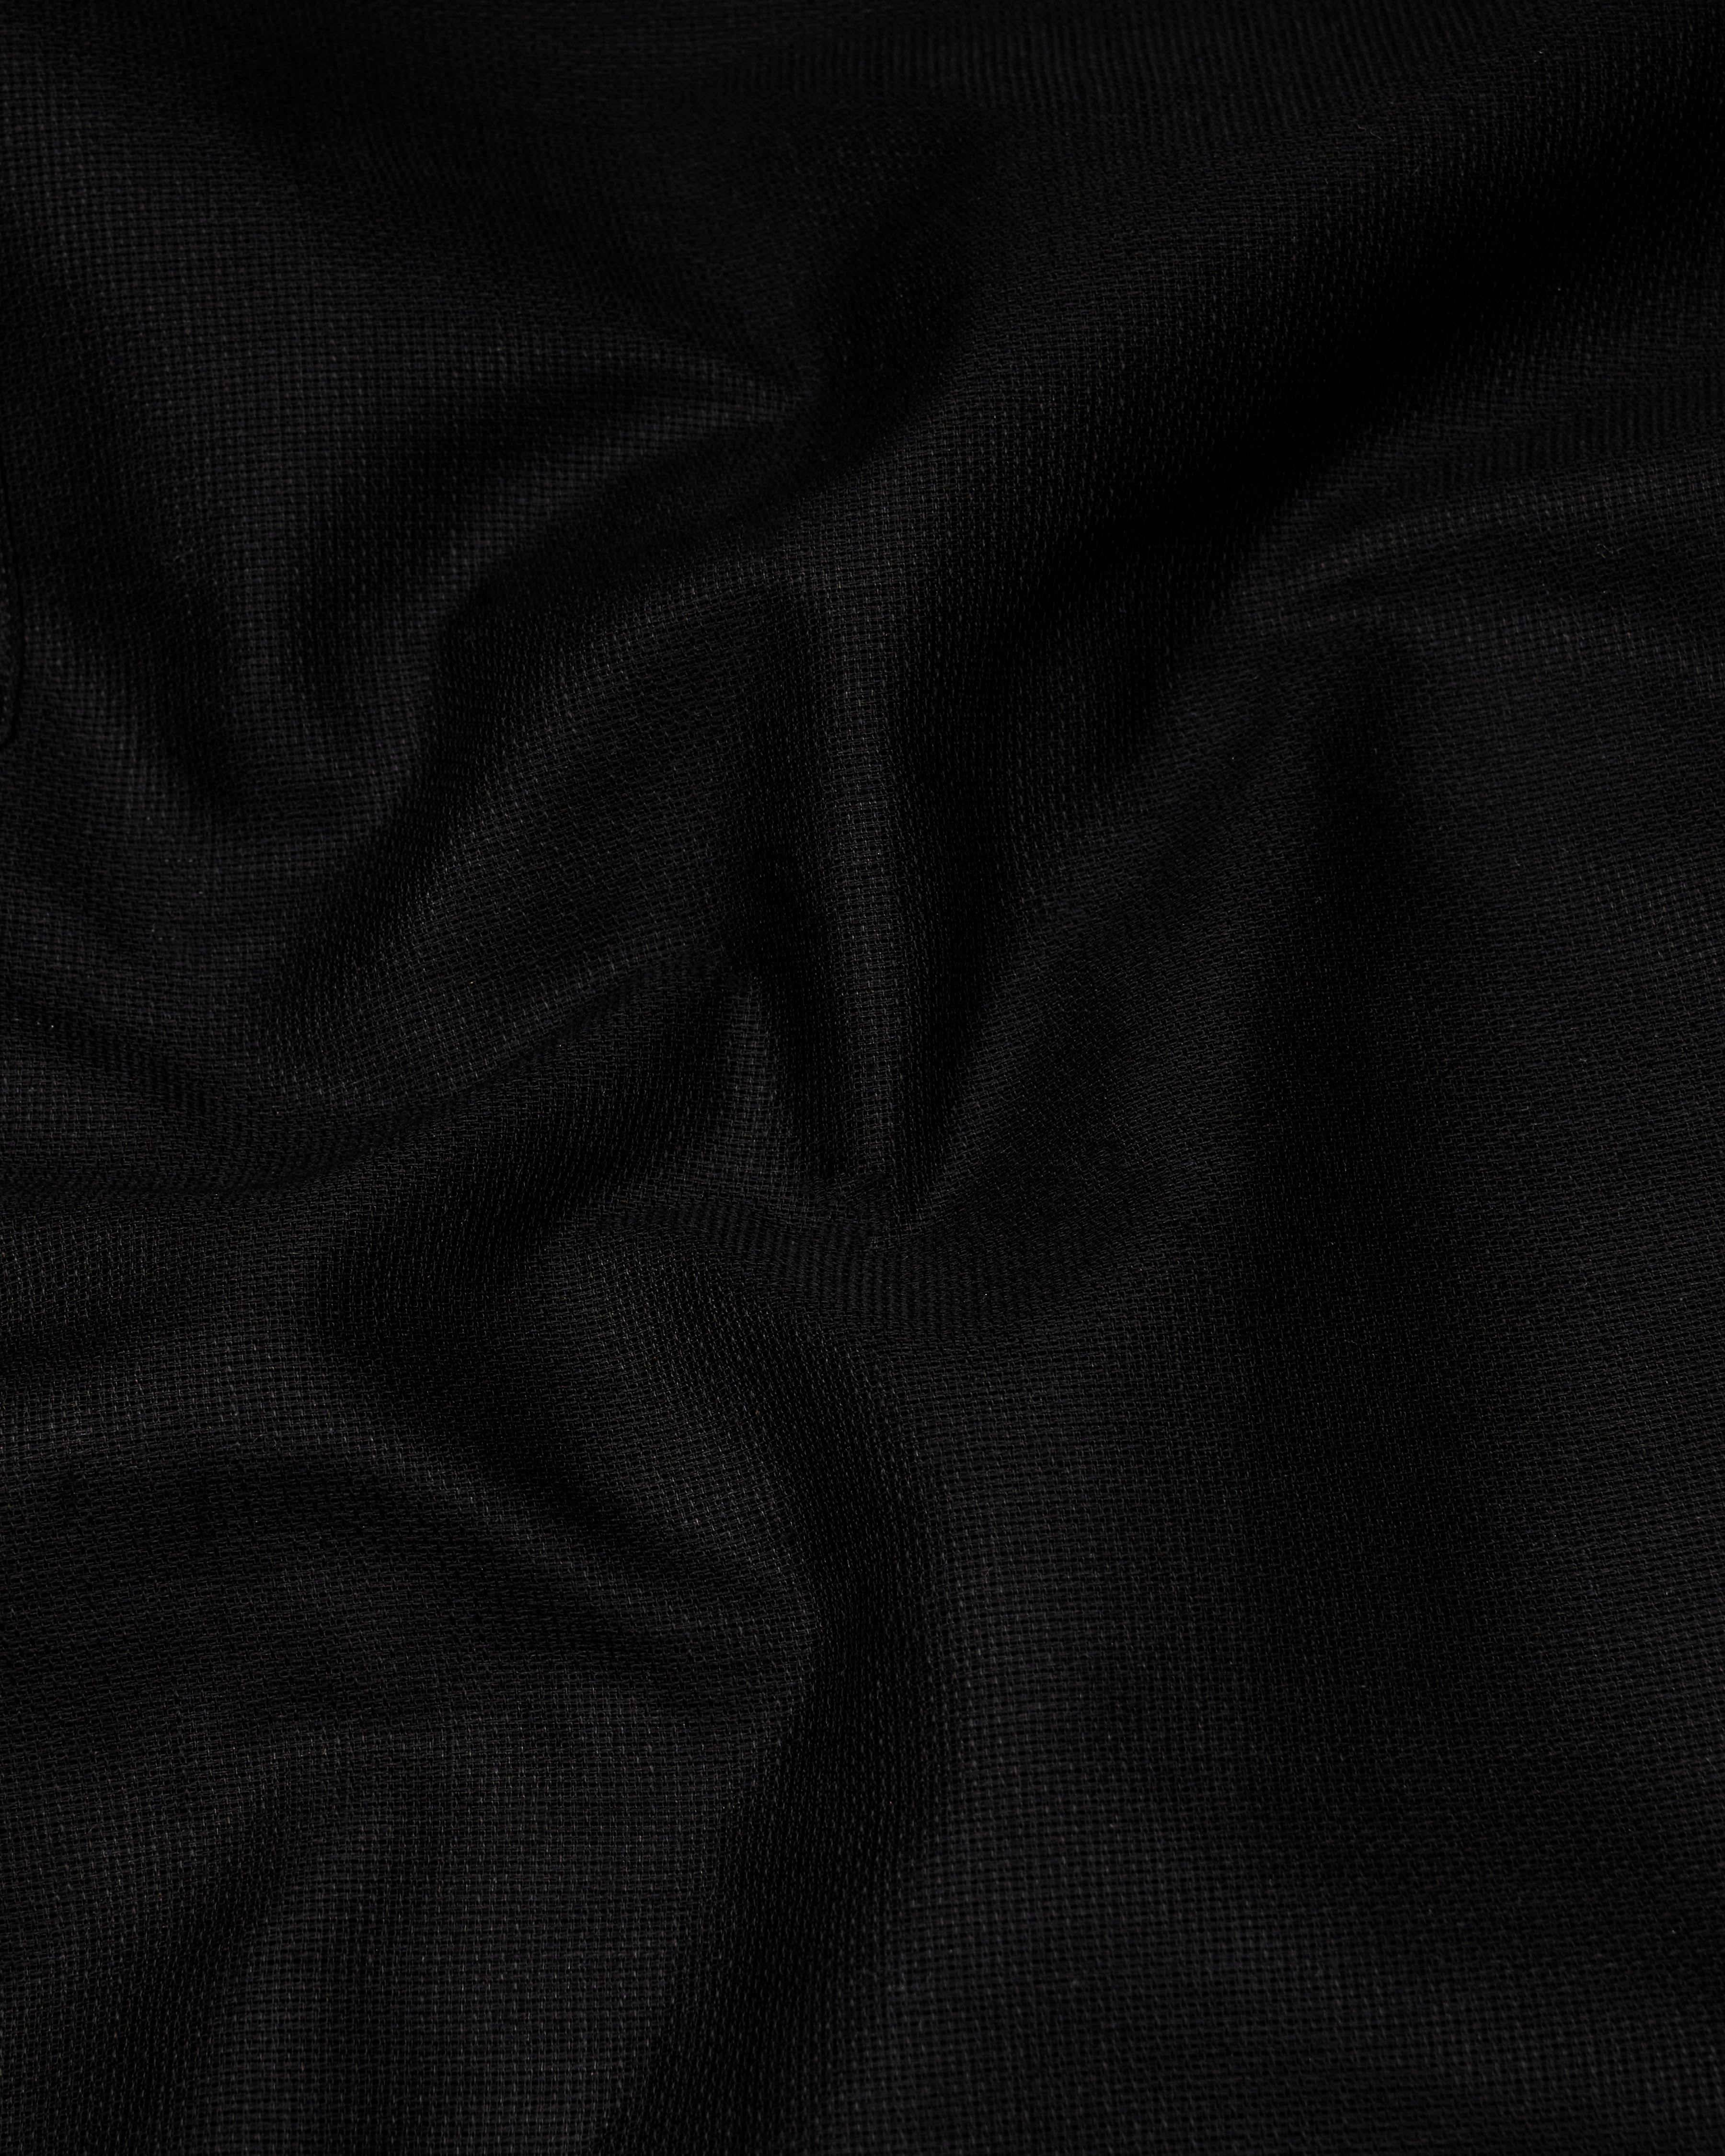 Jade Black with White Collar and Cuffs Dobby Textured Kurta Shirt 9598-WCC-KS-38,9598-WCC-KS-H-38,9598-WCC-KS-39,9598-WCC-KS-H-39,9598-WCC-KS-40,9598-WCC-KS-H-40,9598-WCC-KS-42,9598-WCC-KS-H-42,9598-WCC-KS-44,9598-WCC-KS-H-44,9598-WCC-KS-46,9598-WCC-KS-H-46,9598-WCC-KS-48,9598-WCC-KS-H-48,9598-WCC-KS-50,9598-WCC-KS-H-50,9598-WCC-KS-52,9598-WCC-KS-H-52